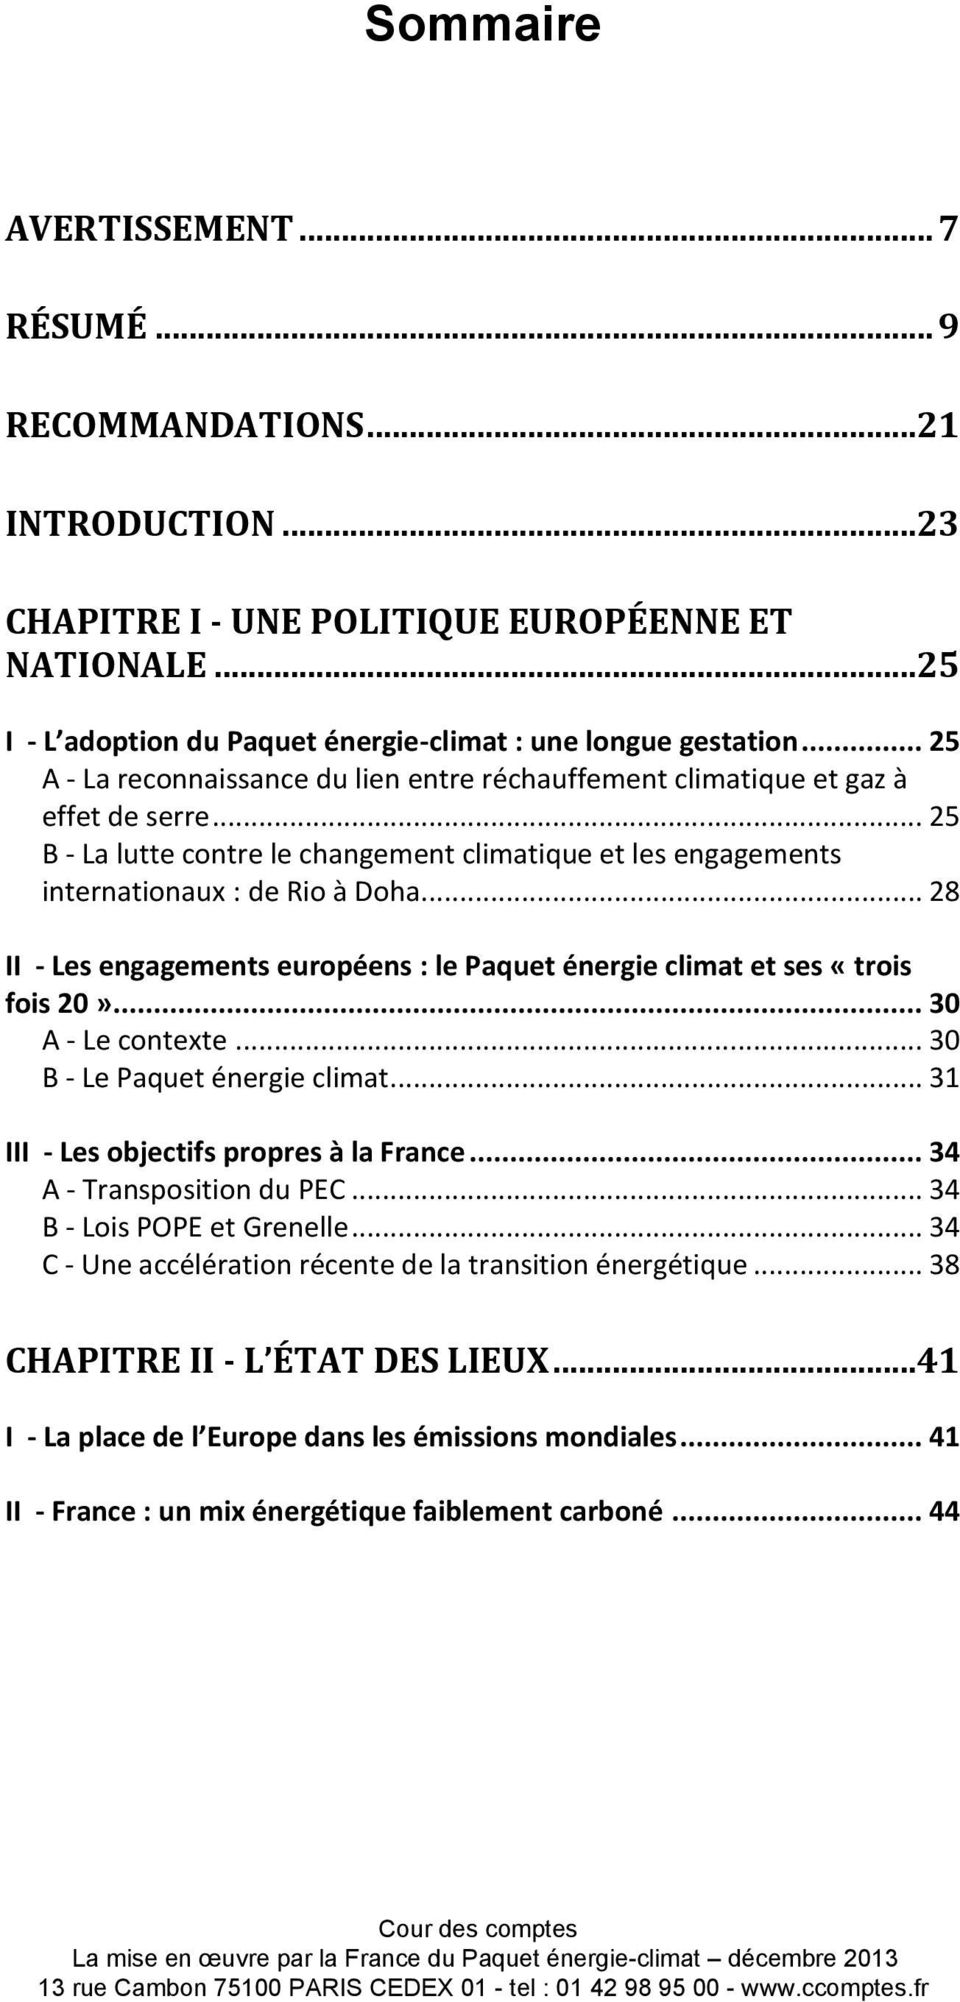 .. 28 II - Les engagements européens : le Paquet énergie climat et ses «trois fois 20»... 30 A - Le contexte... 30 B - Le Paquet énergie climat... 31 III - Les objectifs propres à la France.